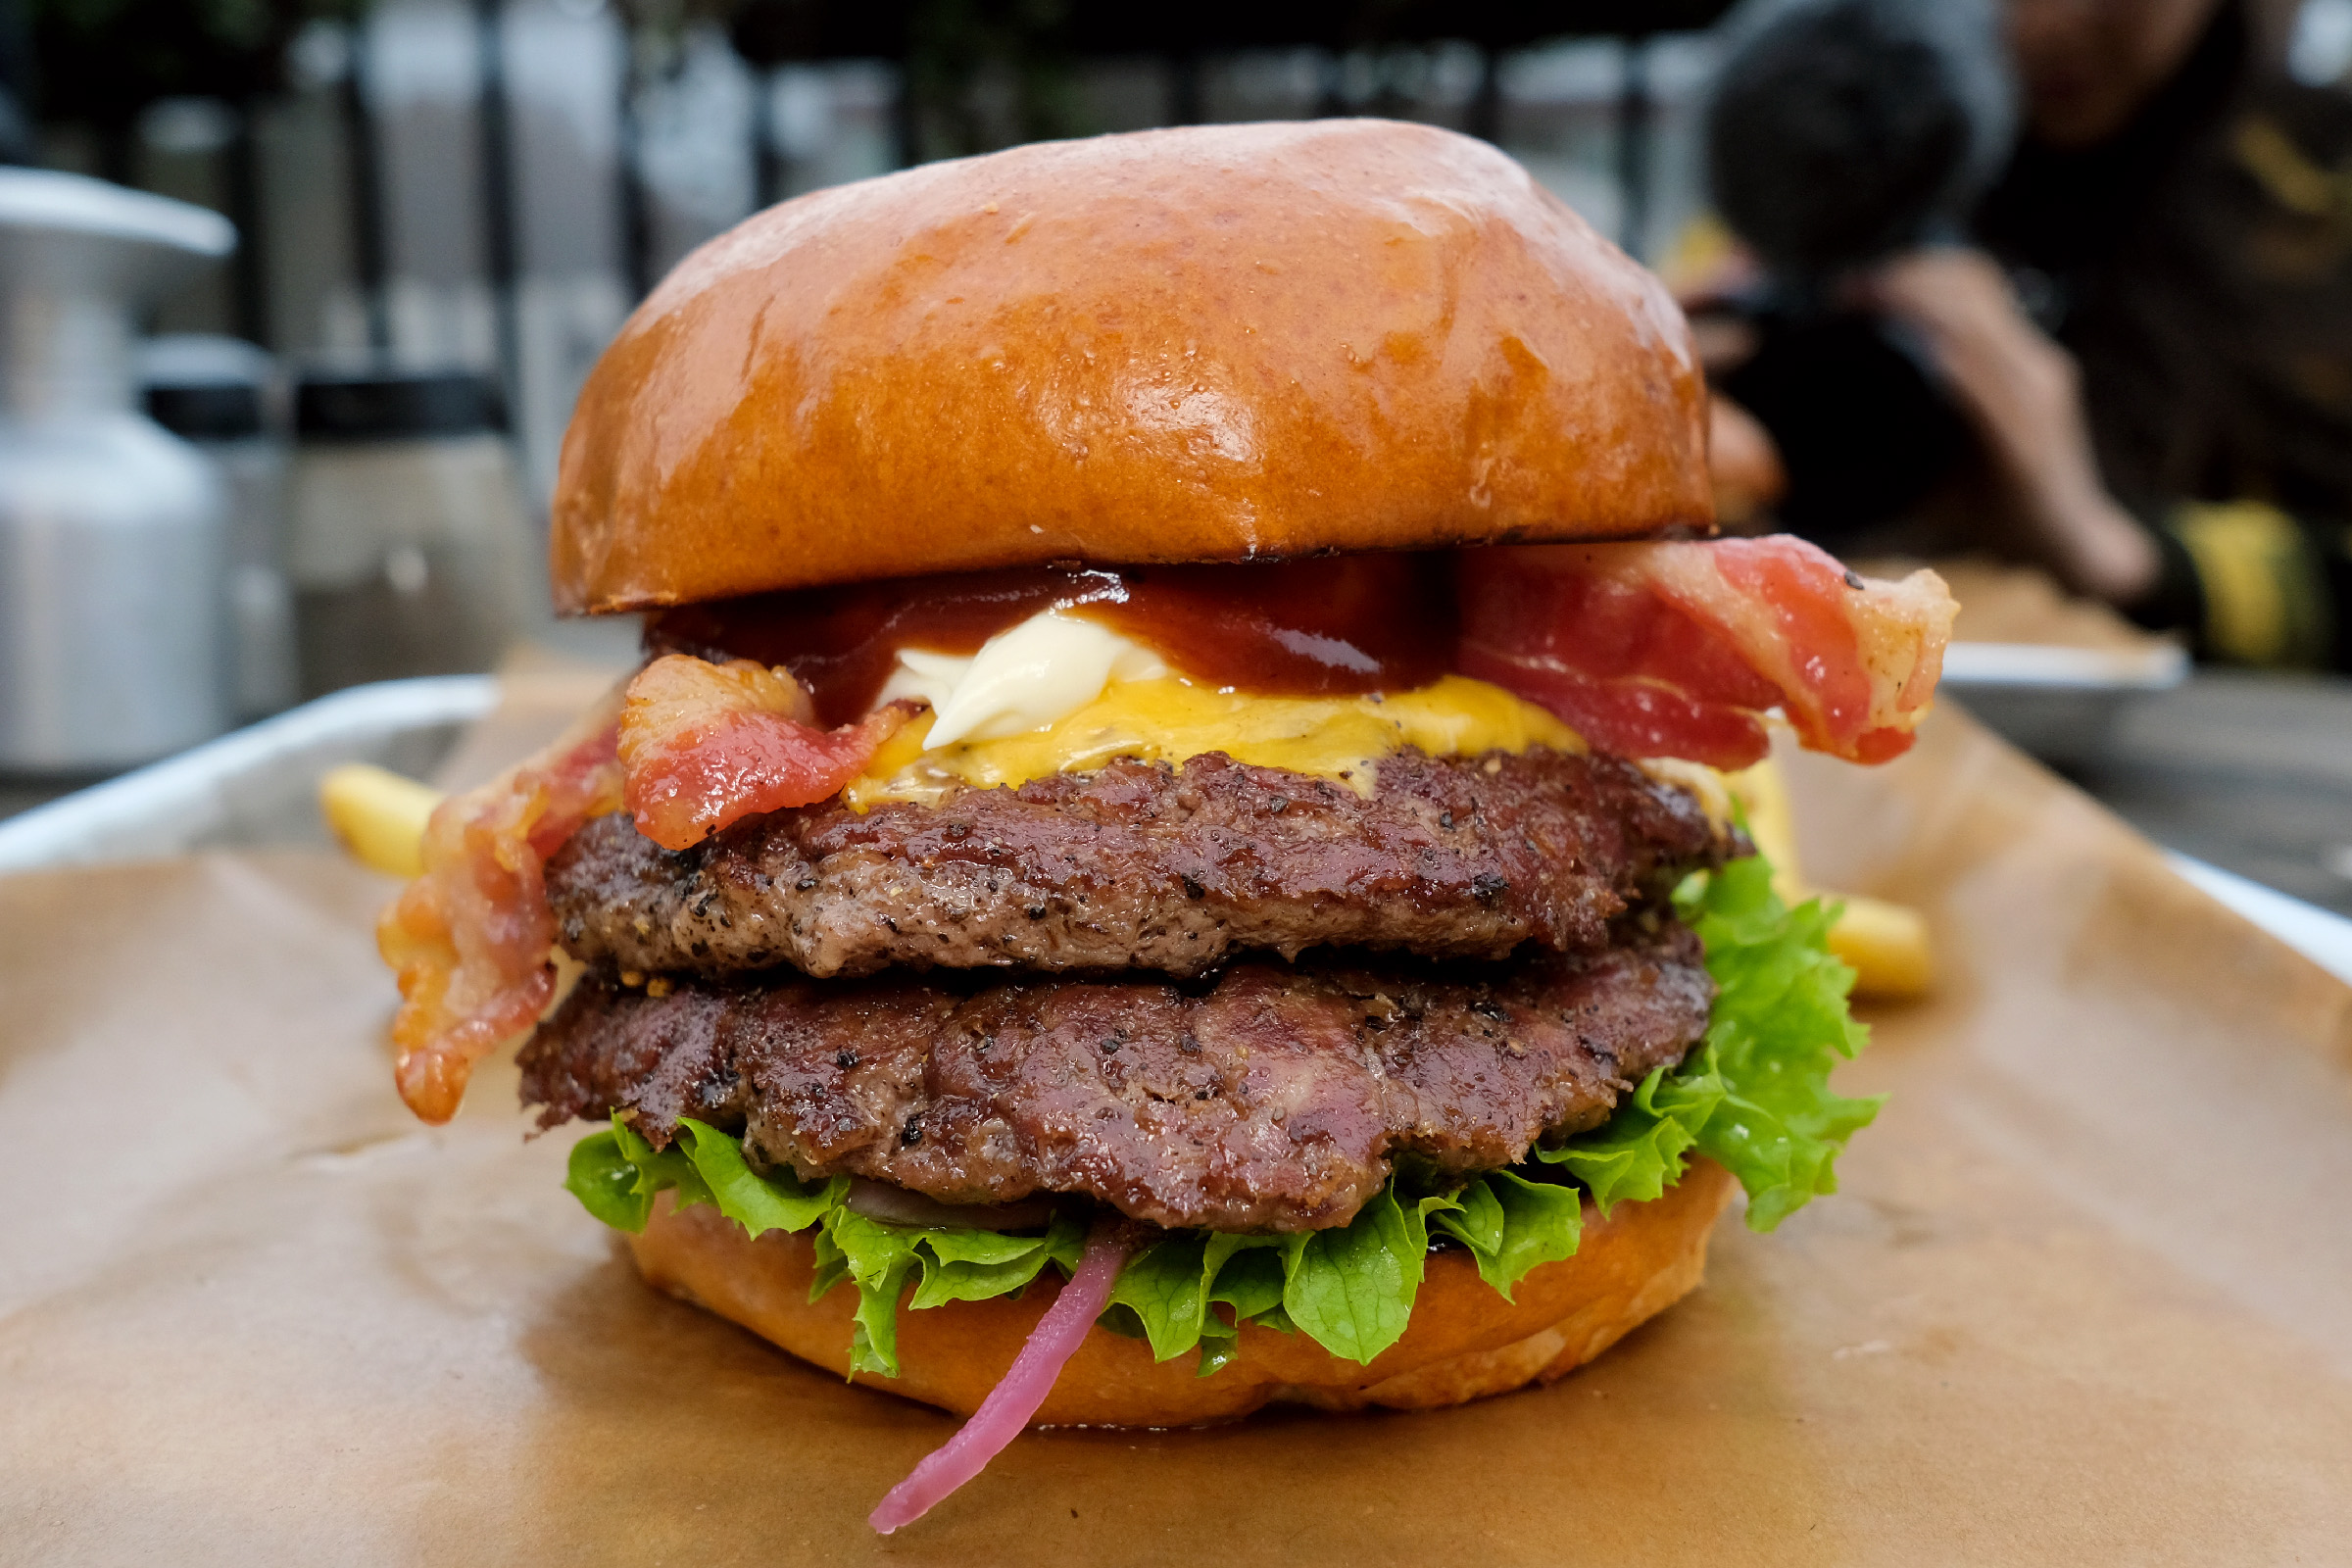 Foto: Dubbel Bacon från O Burgers & More.